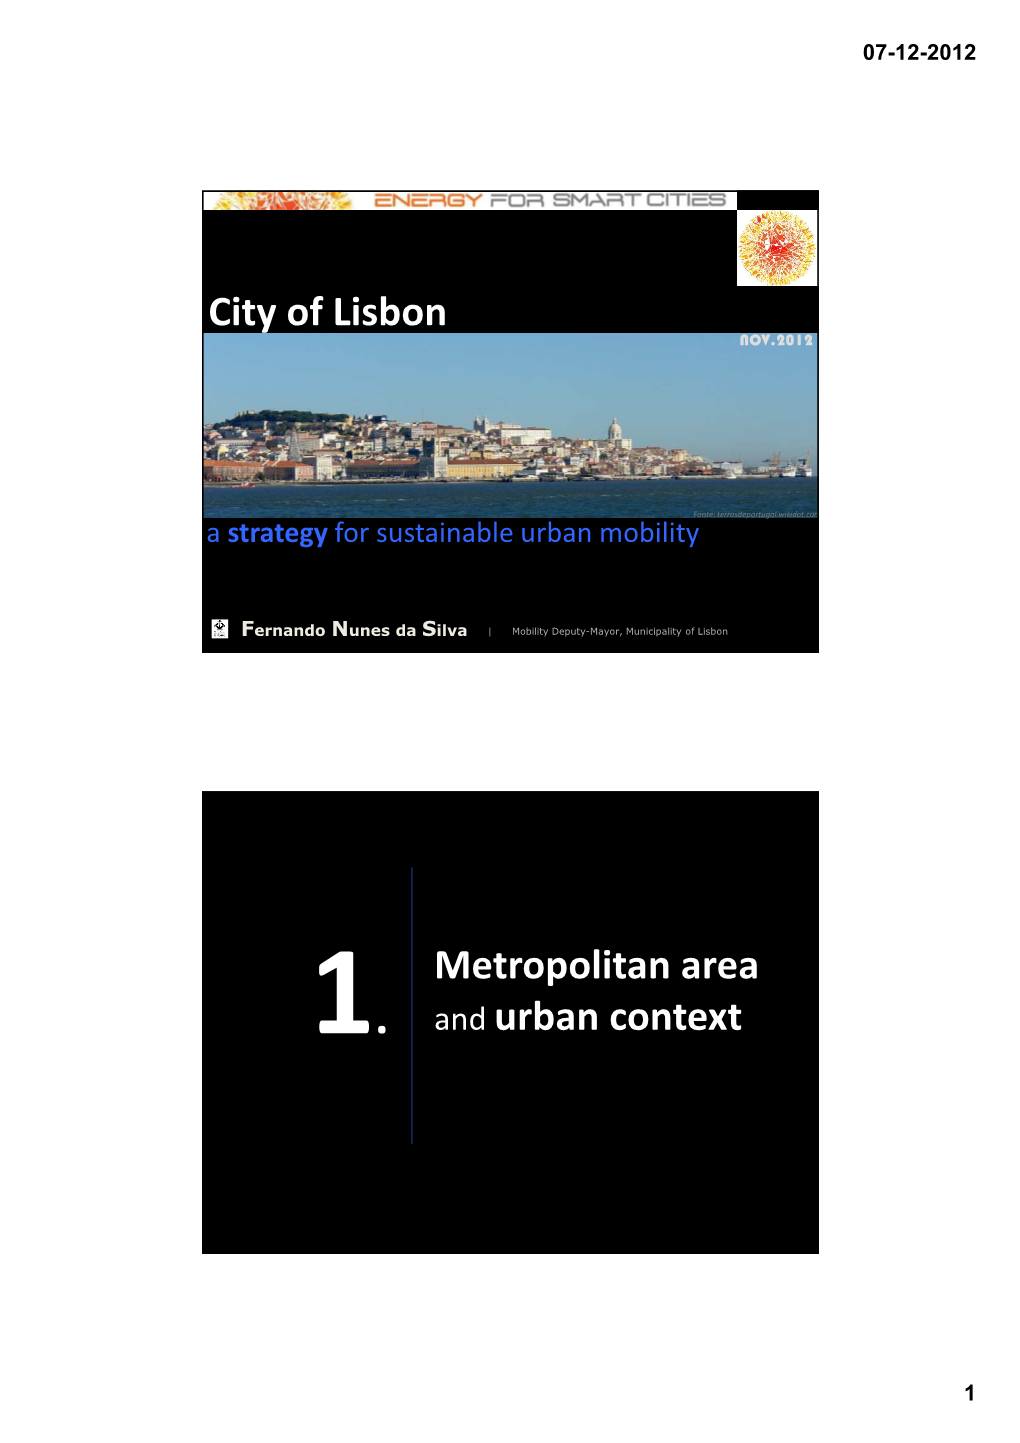 City of Lisbon Metropolitan Area and Urban Context